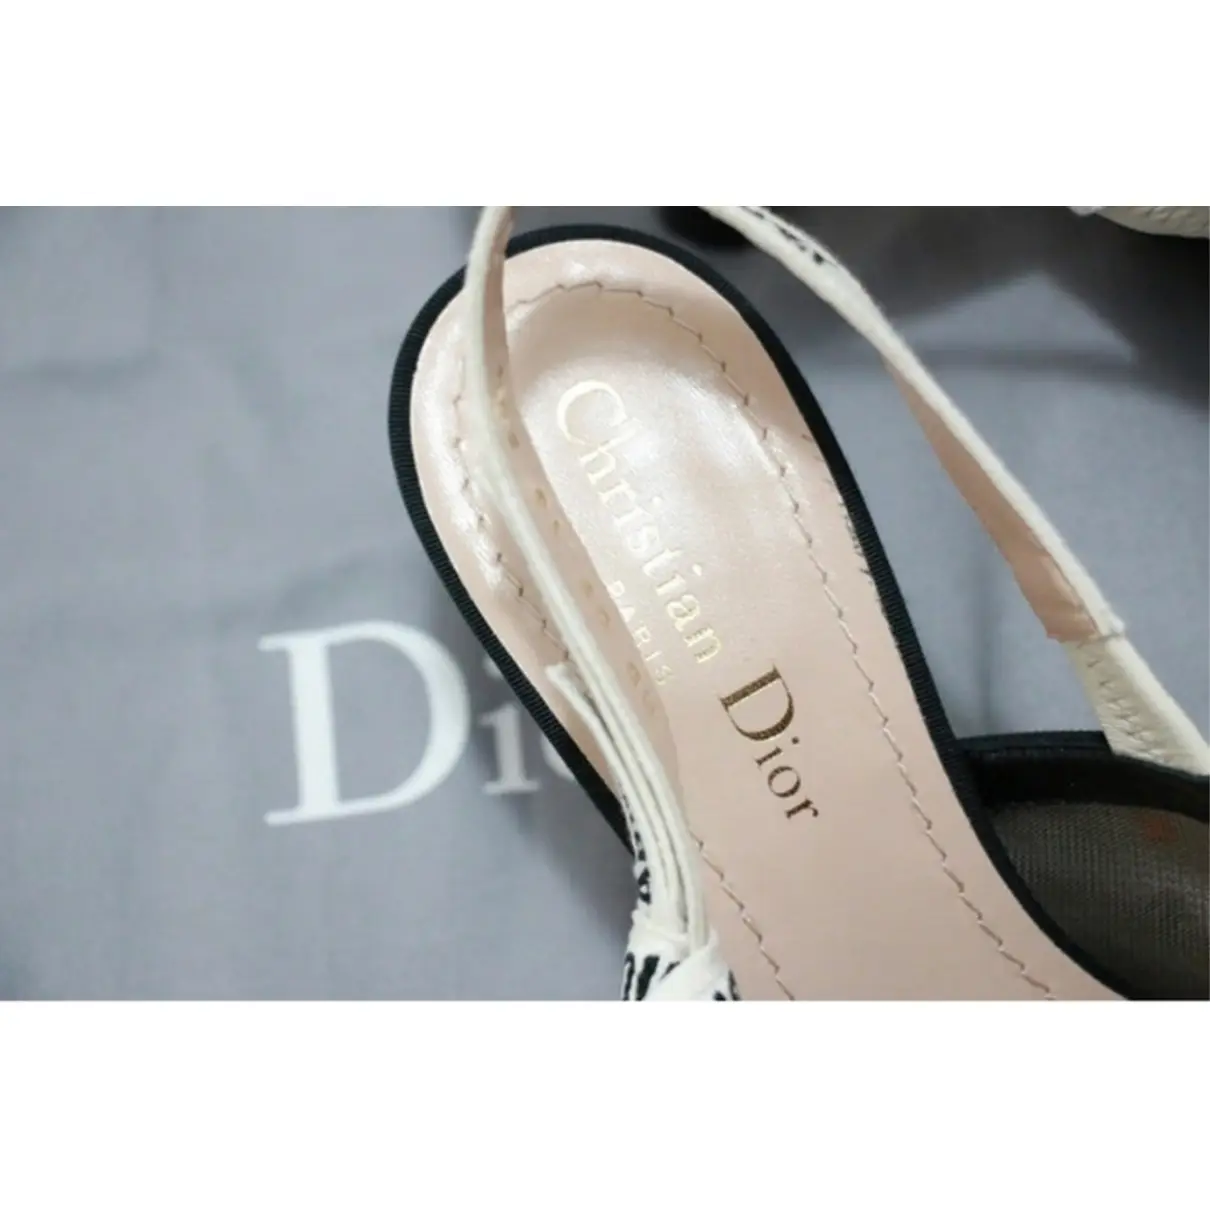 J'adior cloth sandals Dior